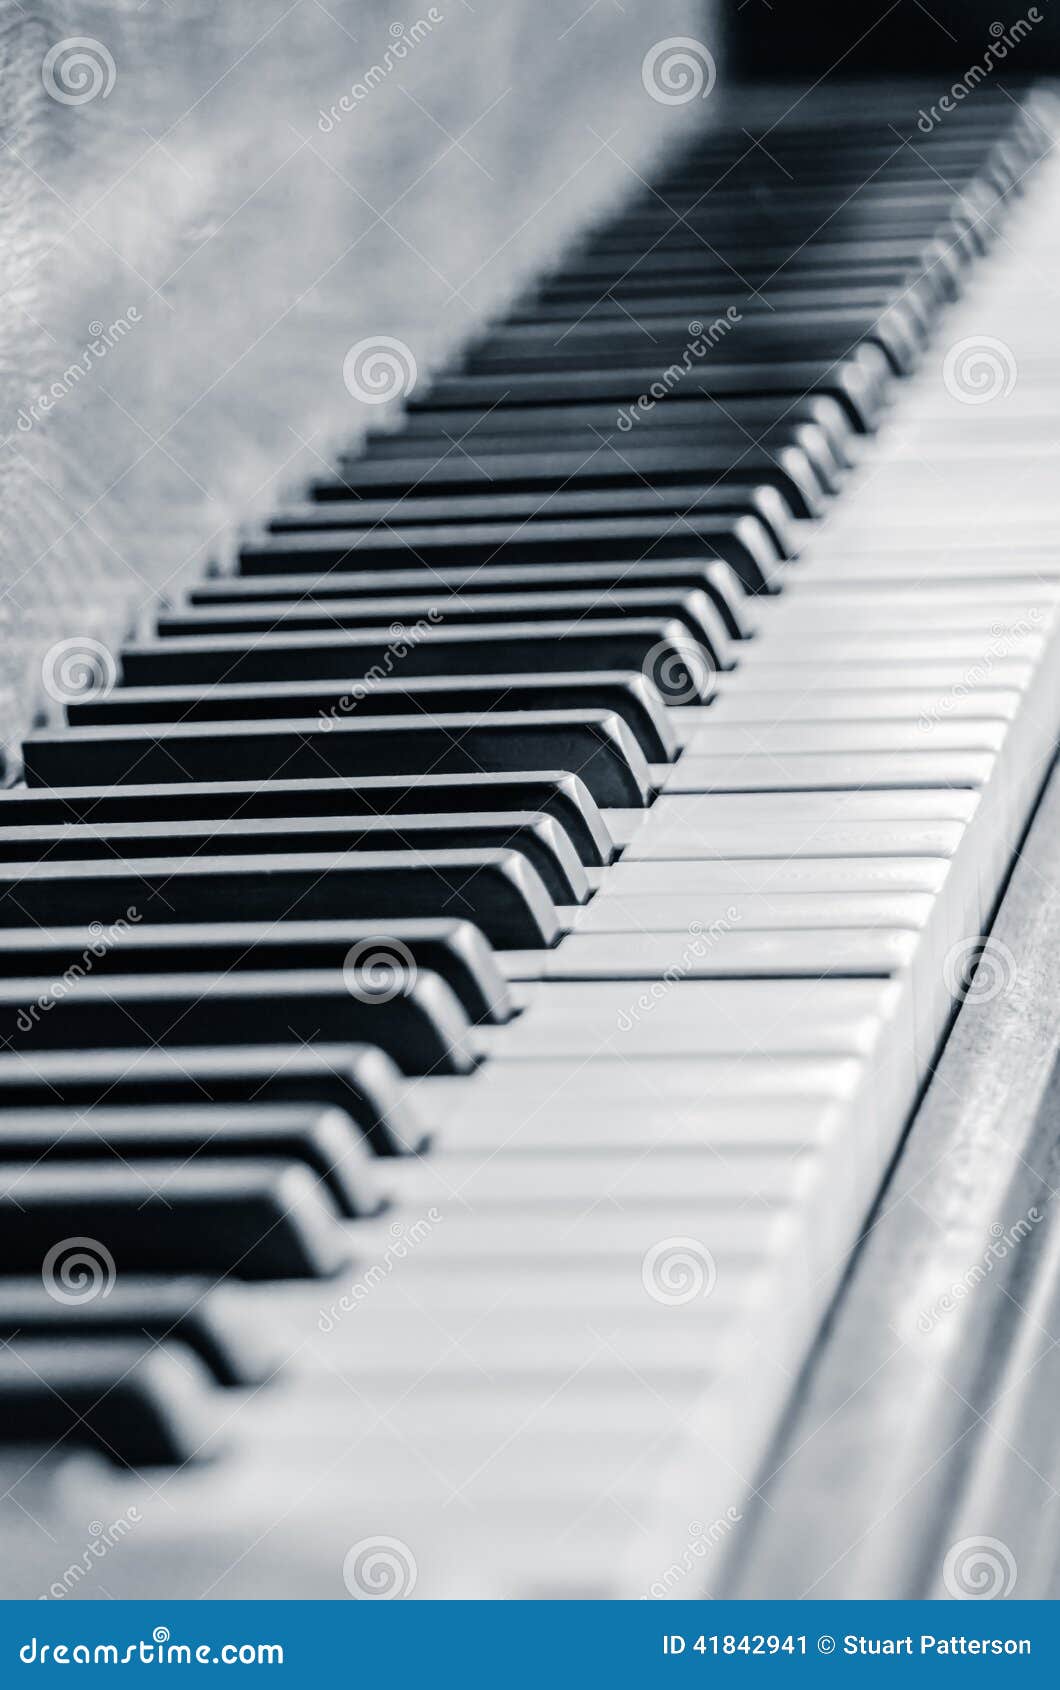 Jazz Piano Keys in Zwart-wit. Een zwart-wit beeld van een zeer belangrijke raad van de jazzpiano Fotografie in Carolinas